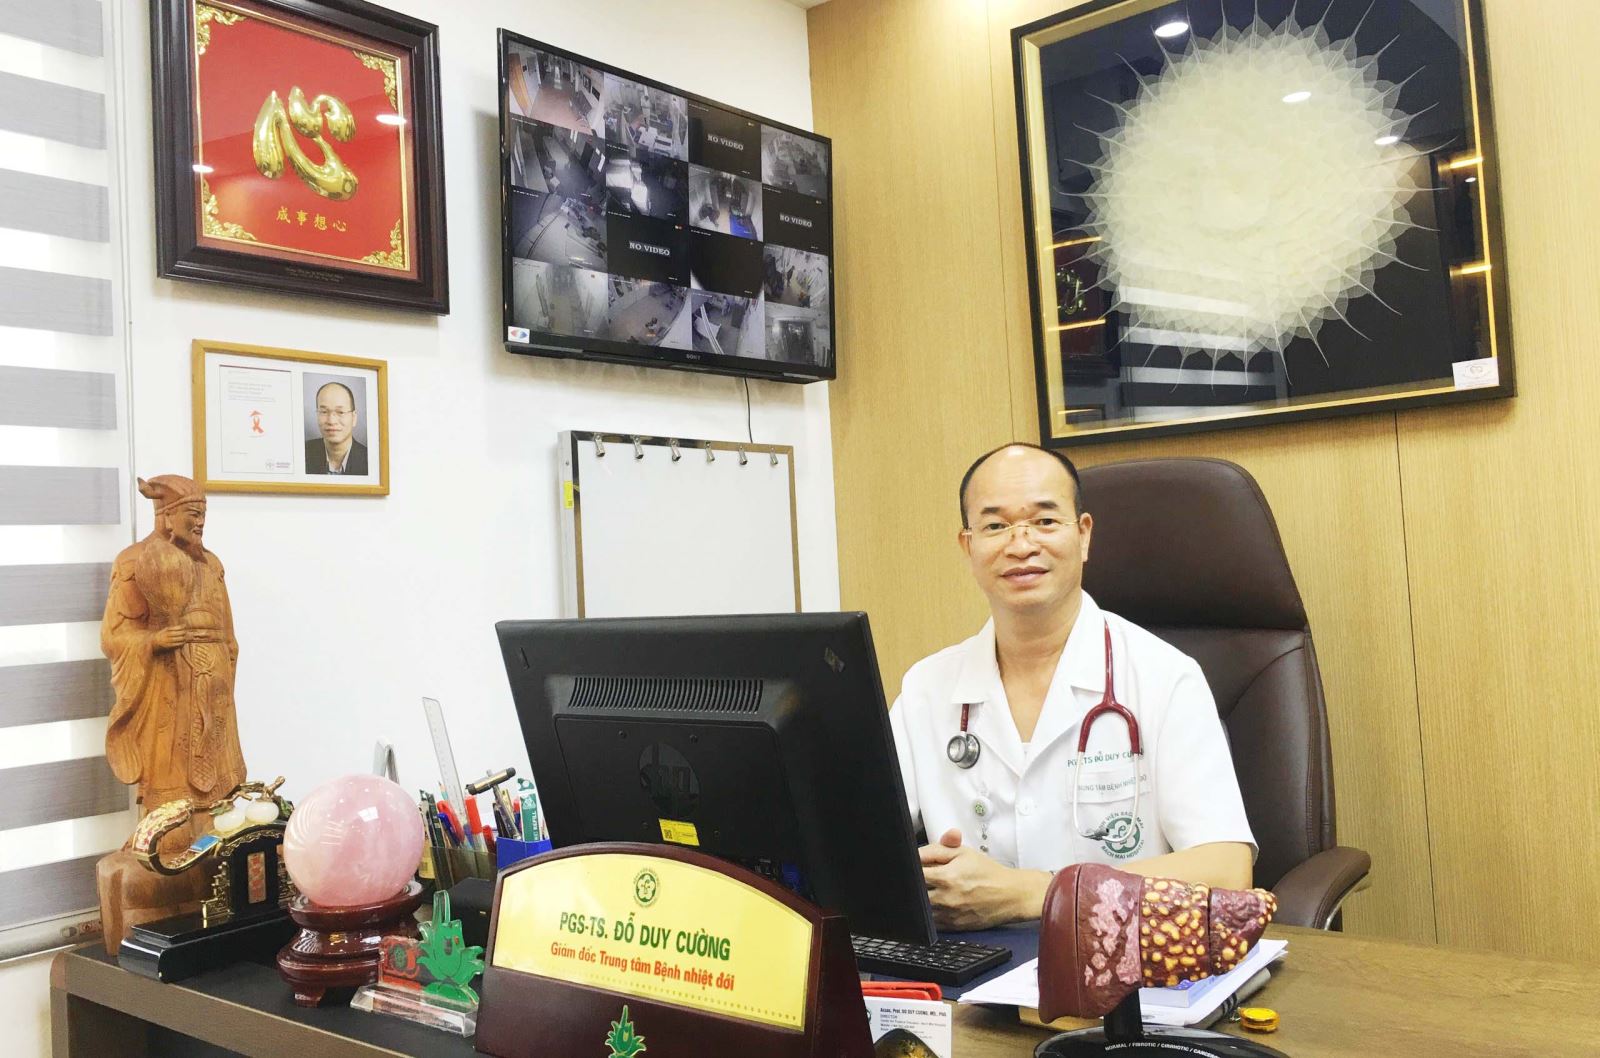 PGS.TS Đỗ Duy Cường, Giám đốc Trung tâm Bệnh nhiệt đới, Bệnh viện Bạch Mai.